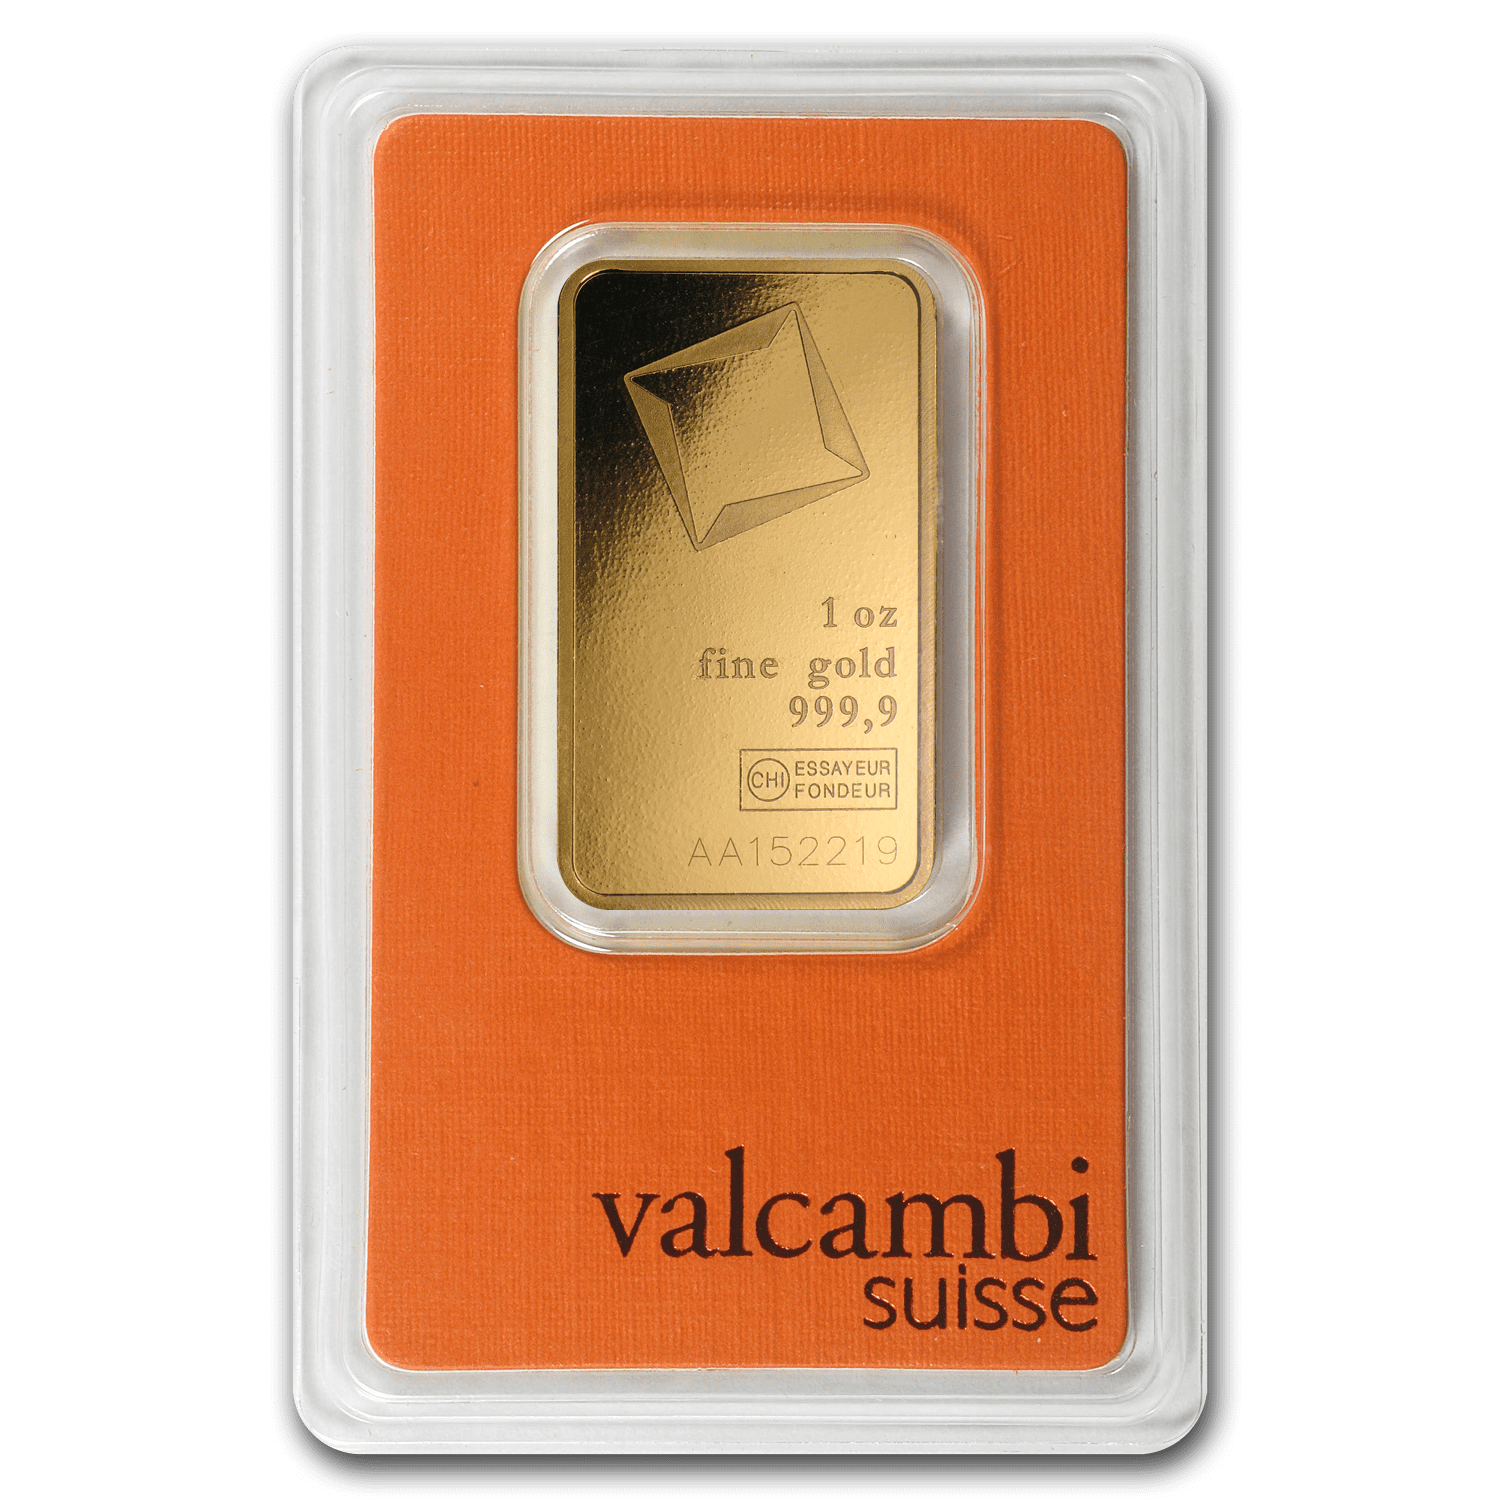 Valcambi Suisse 999.9 Fine in Sealed Assay 100 gram Gold Bar 